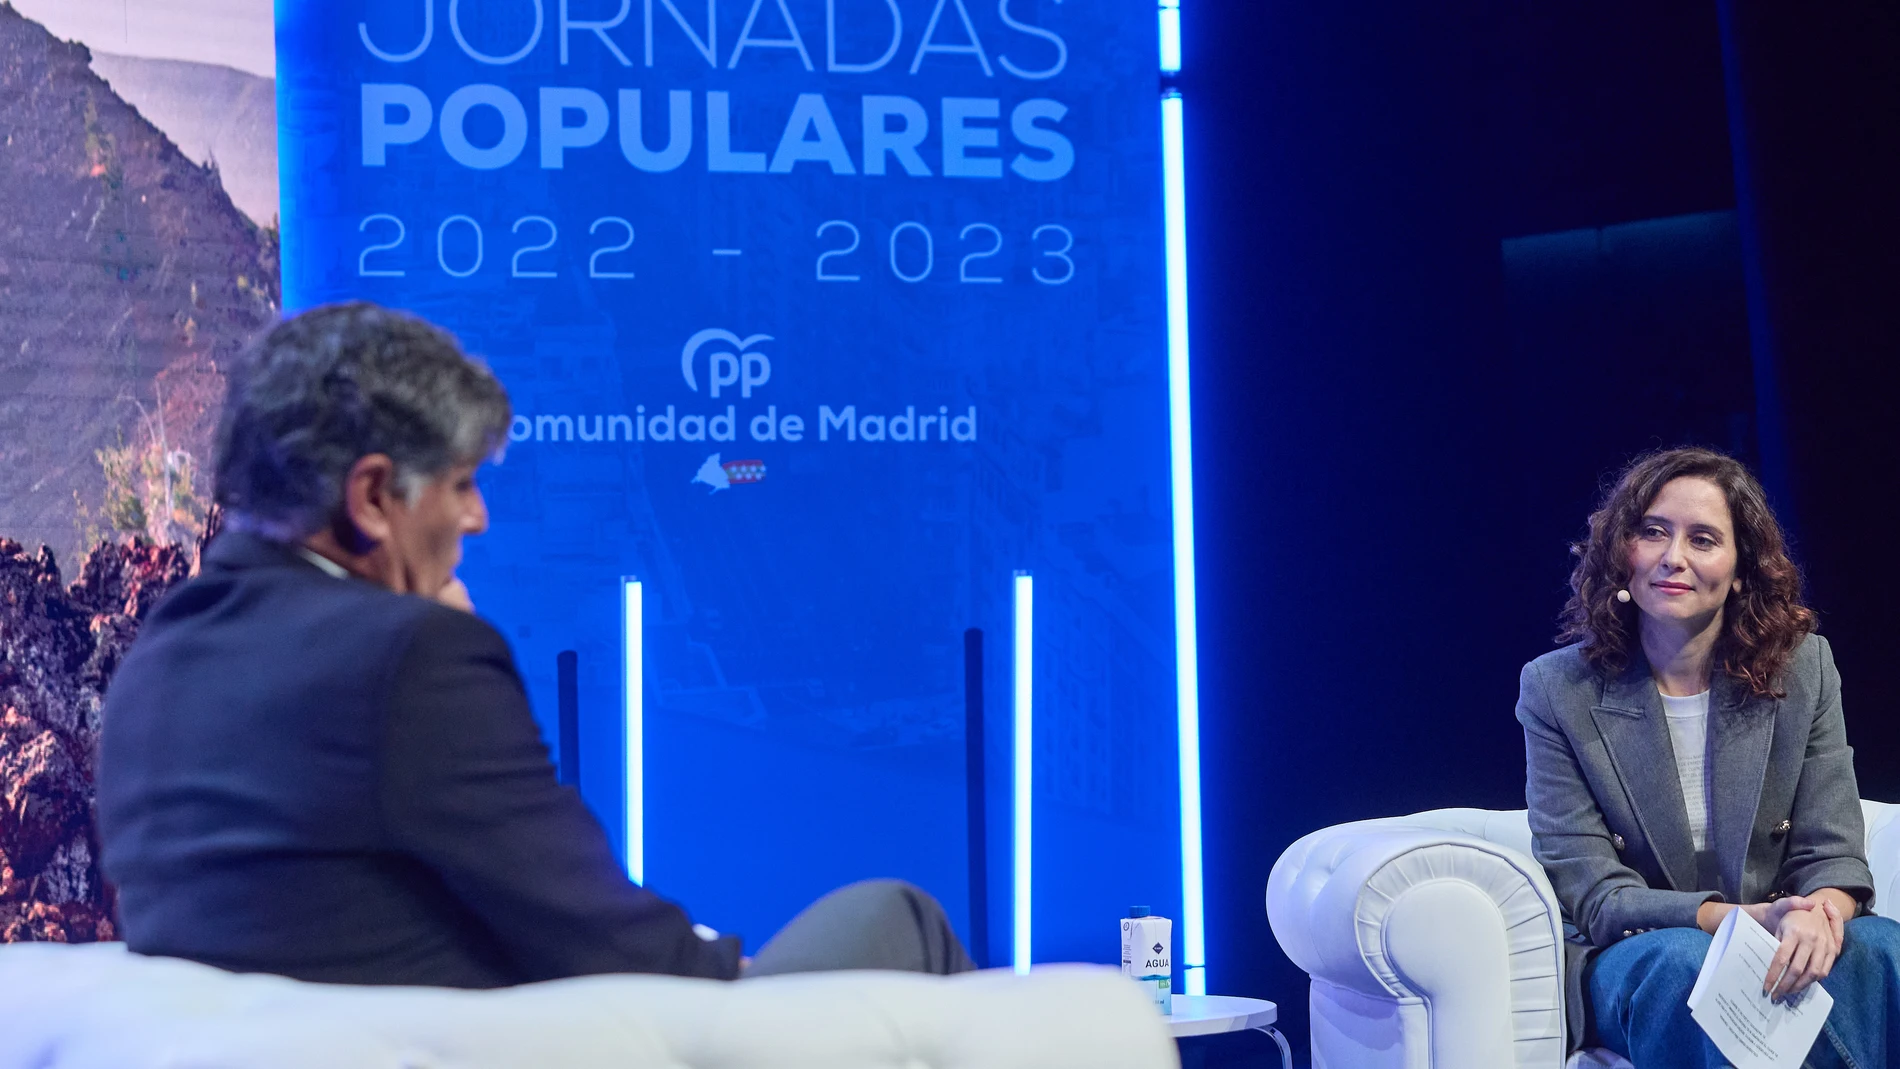 La presidenta de la Comunidad de Madrid, Isabel Díaz Ayuso, conversa con el entrenador de tenis Toni Nadal